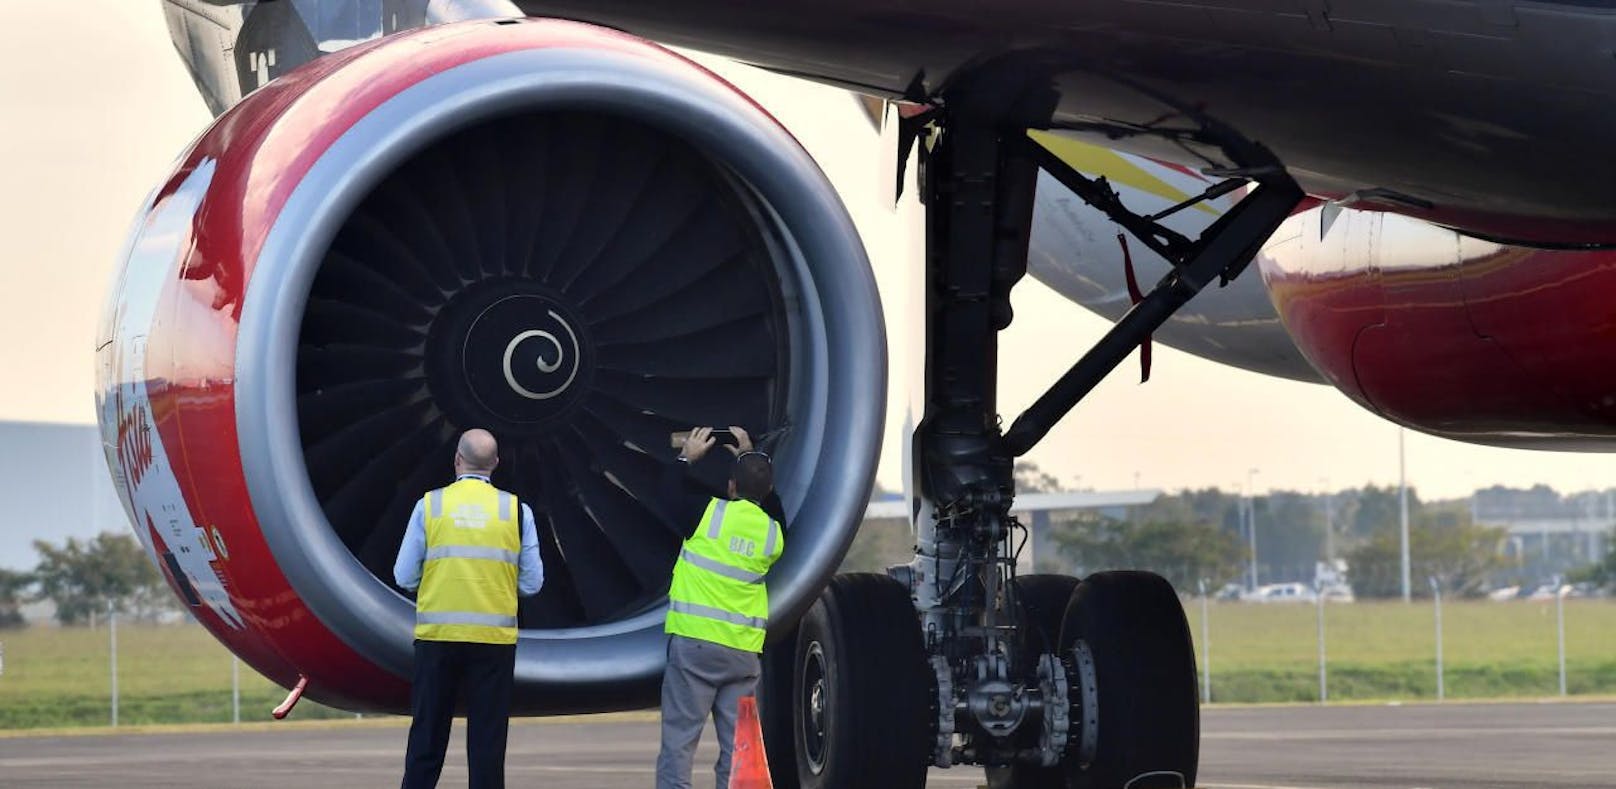 AirAsia musste in Brisbane nach Vogelschlag notlanden